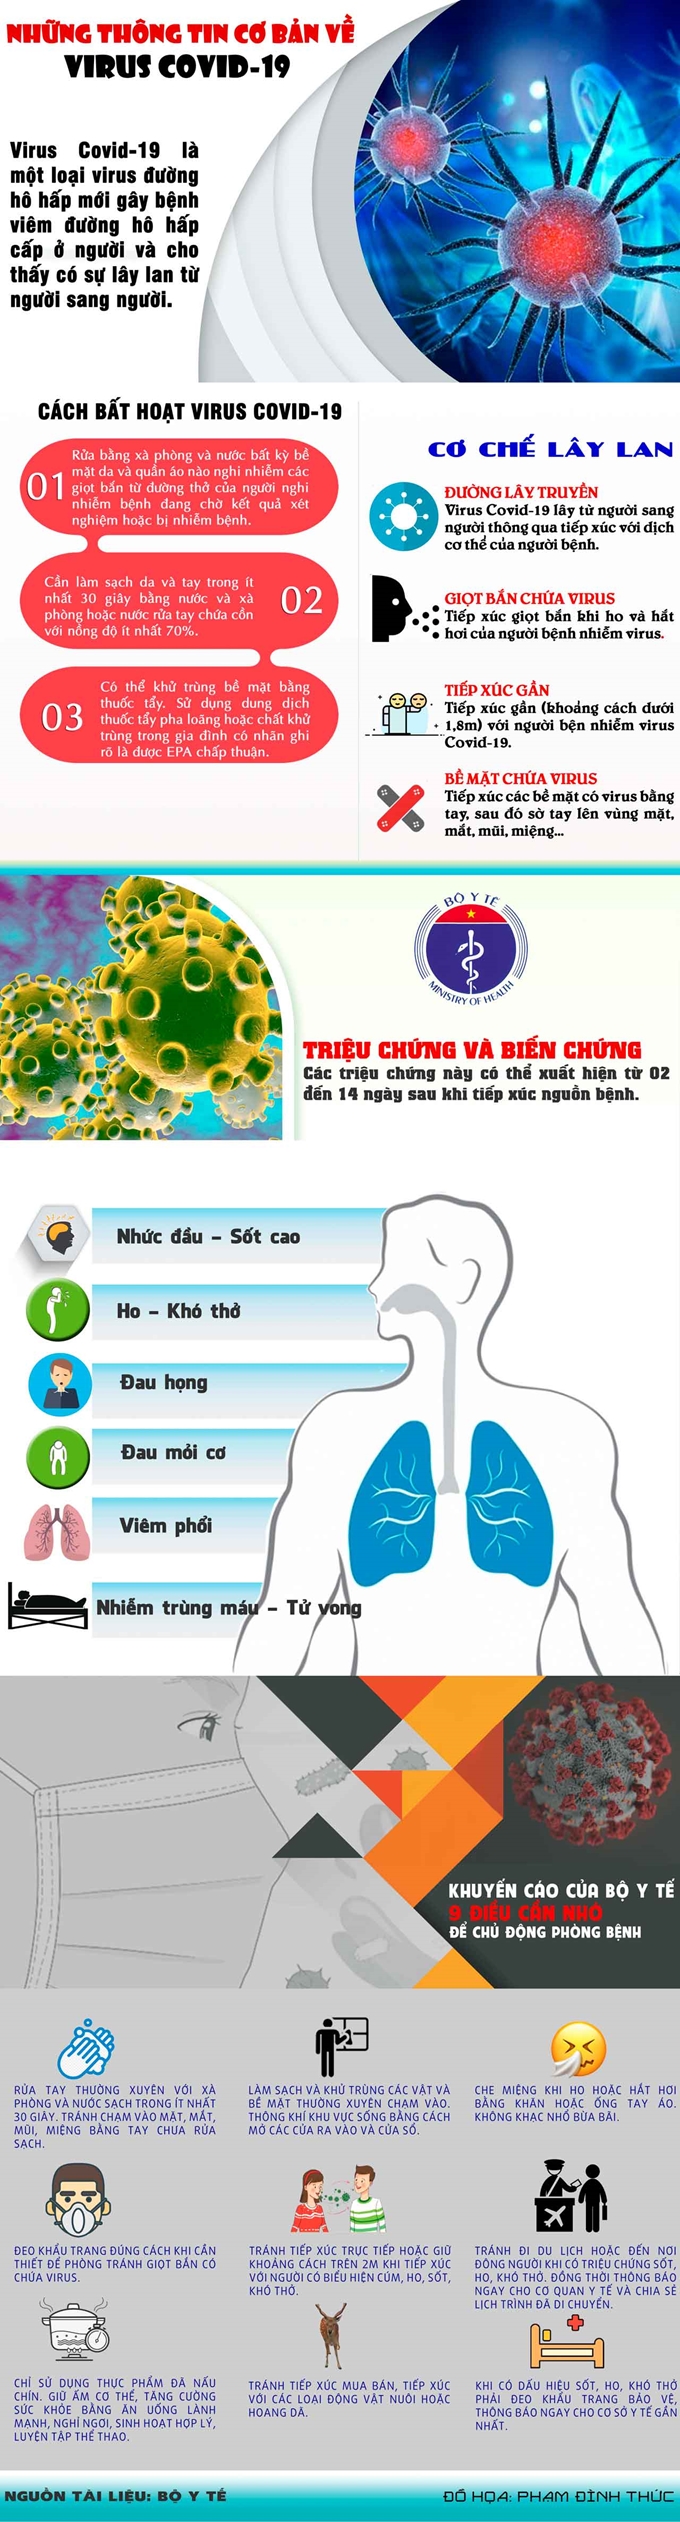 [Infographic] Những thông tin cơ bản về virus Covid-19